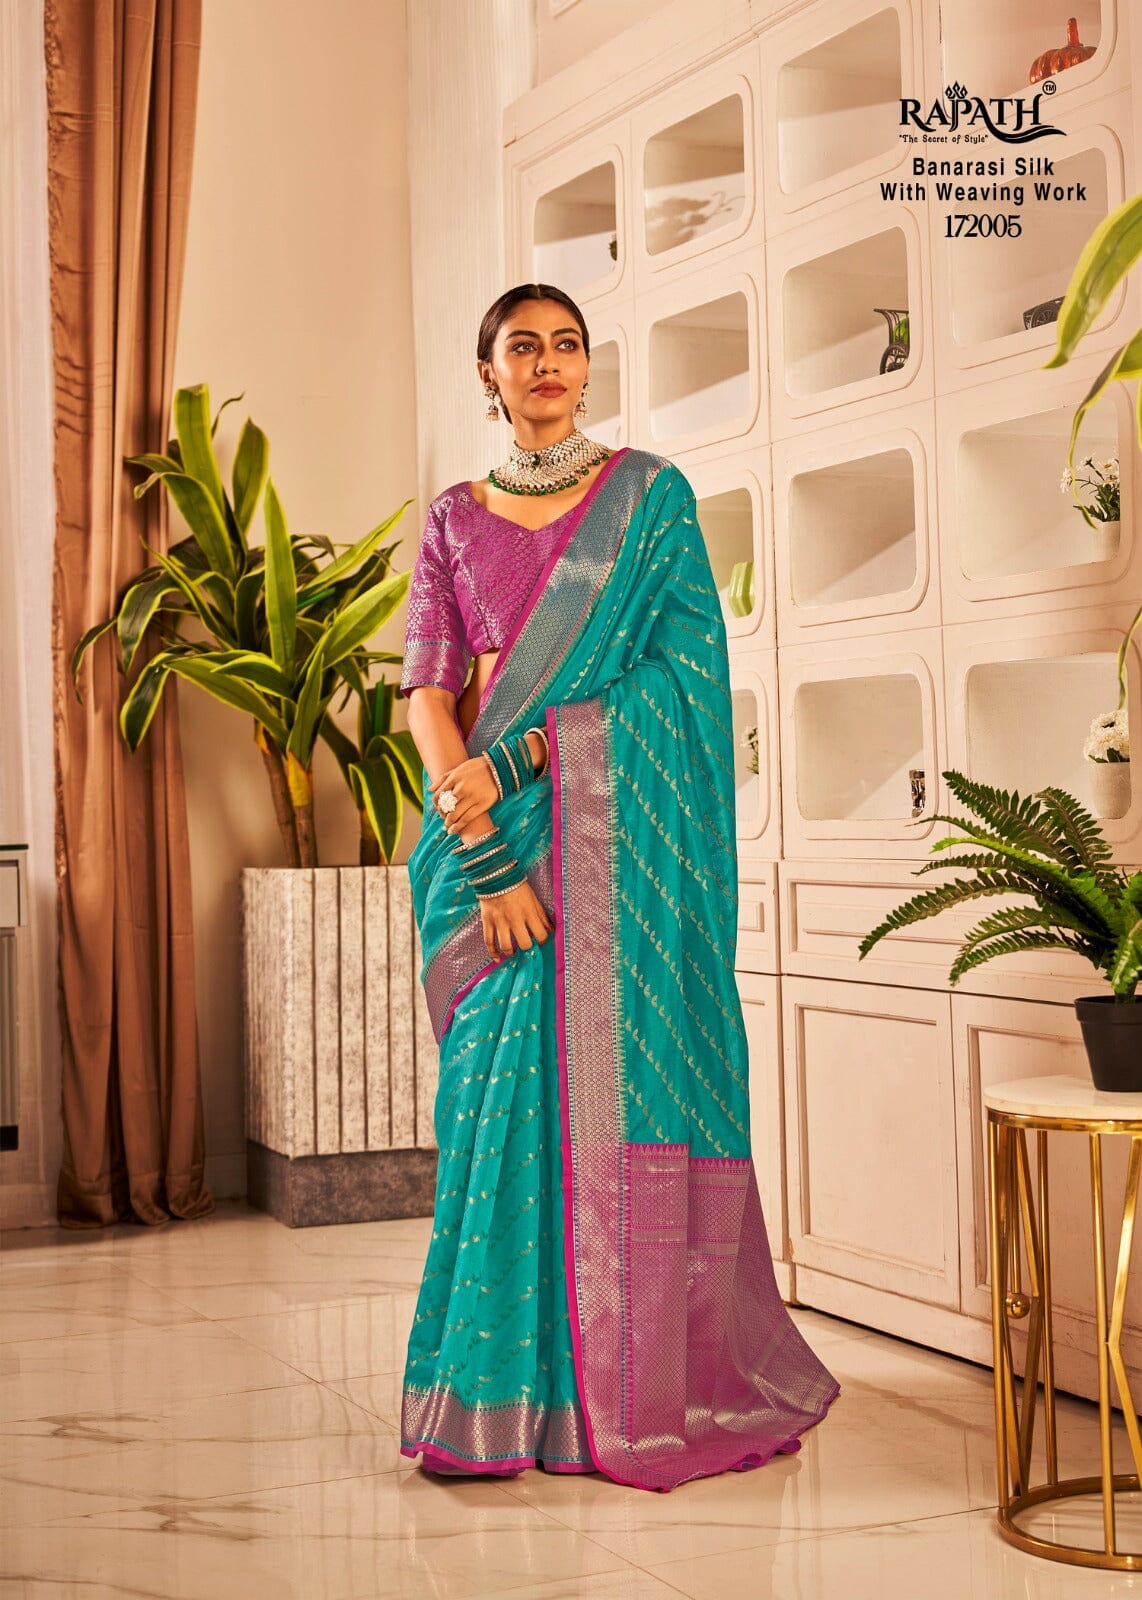 172005 Rajpath Vaijanti Banarasi Silk With Weaving Saree Silk Saree Shopin Di Apparels 